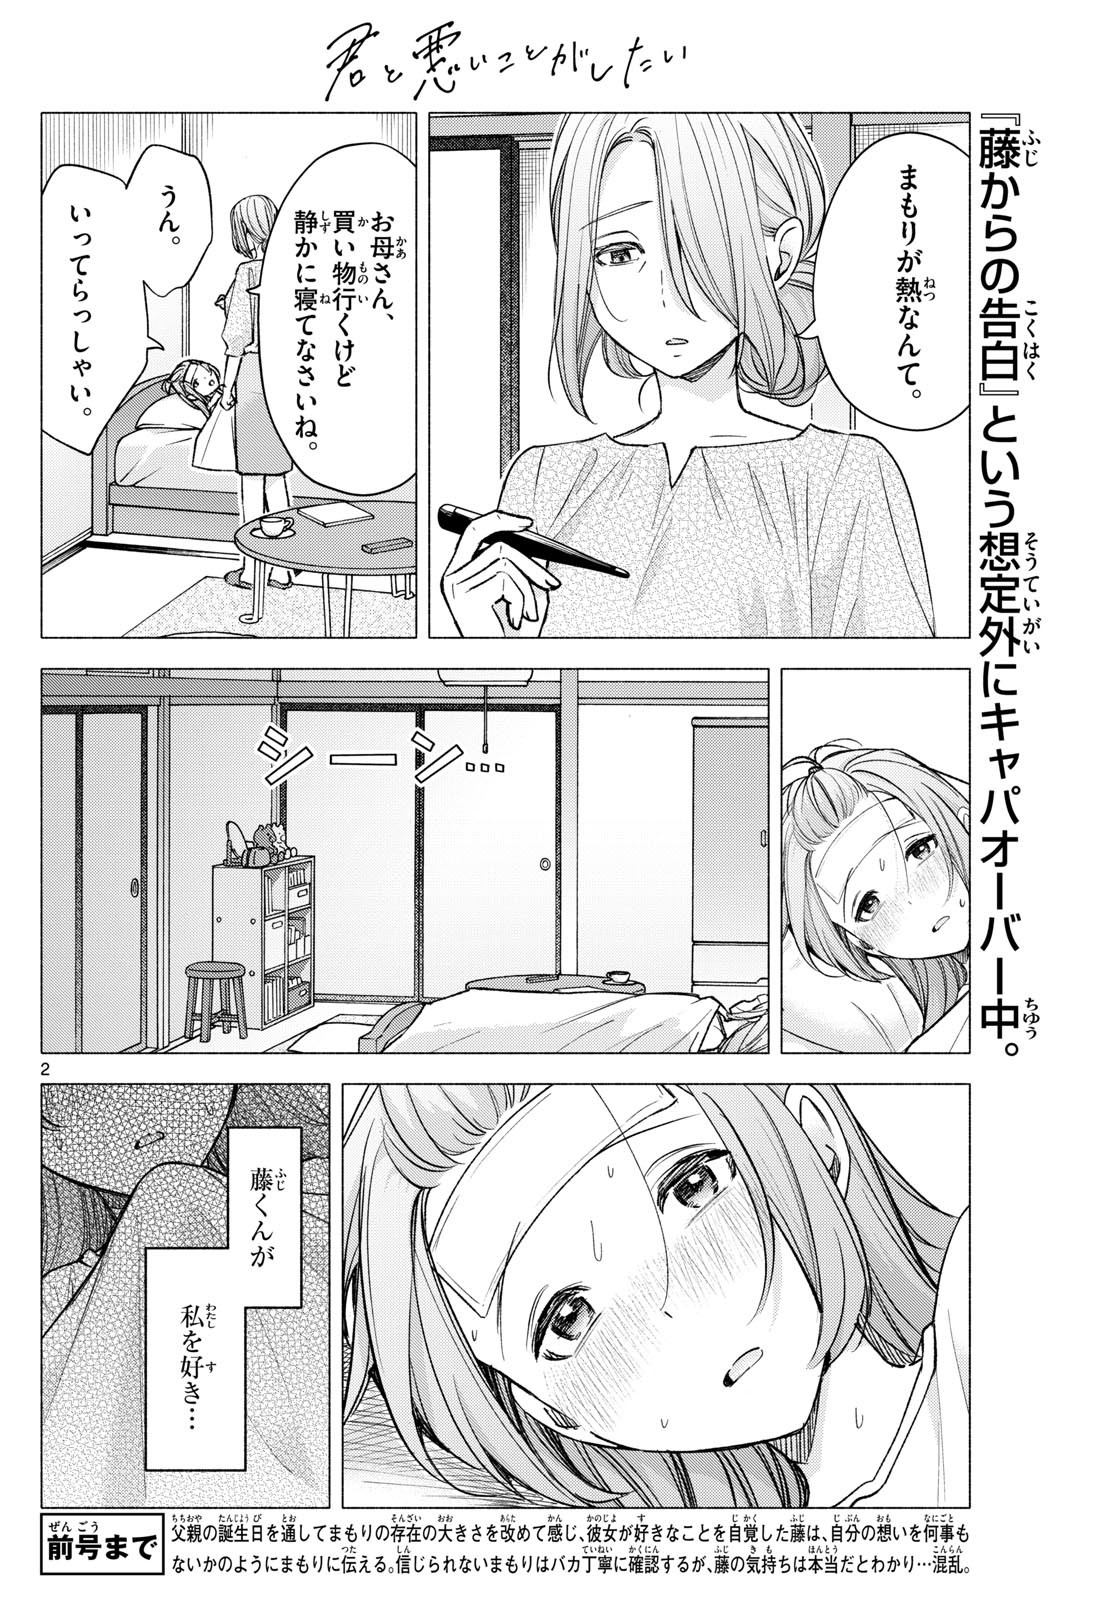 Kimi to Warui Koto ga Shitai - Chapter 058 - Page 2